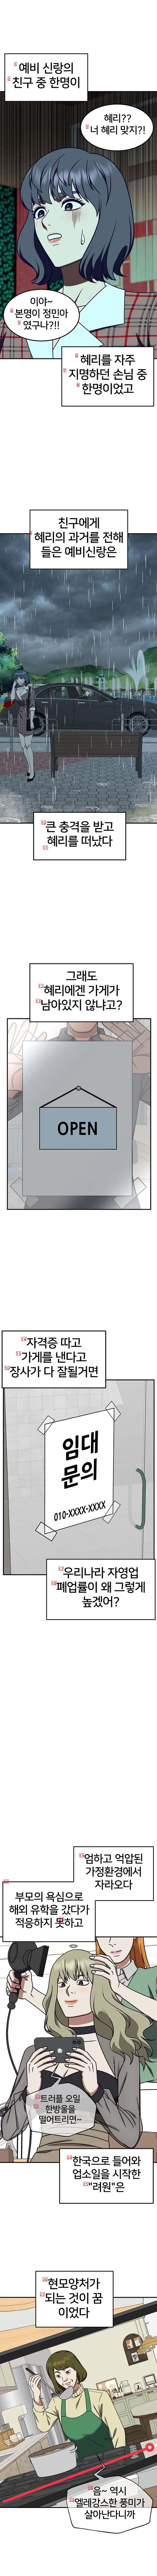 K-업소녀 갱생 과정.jpg